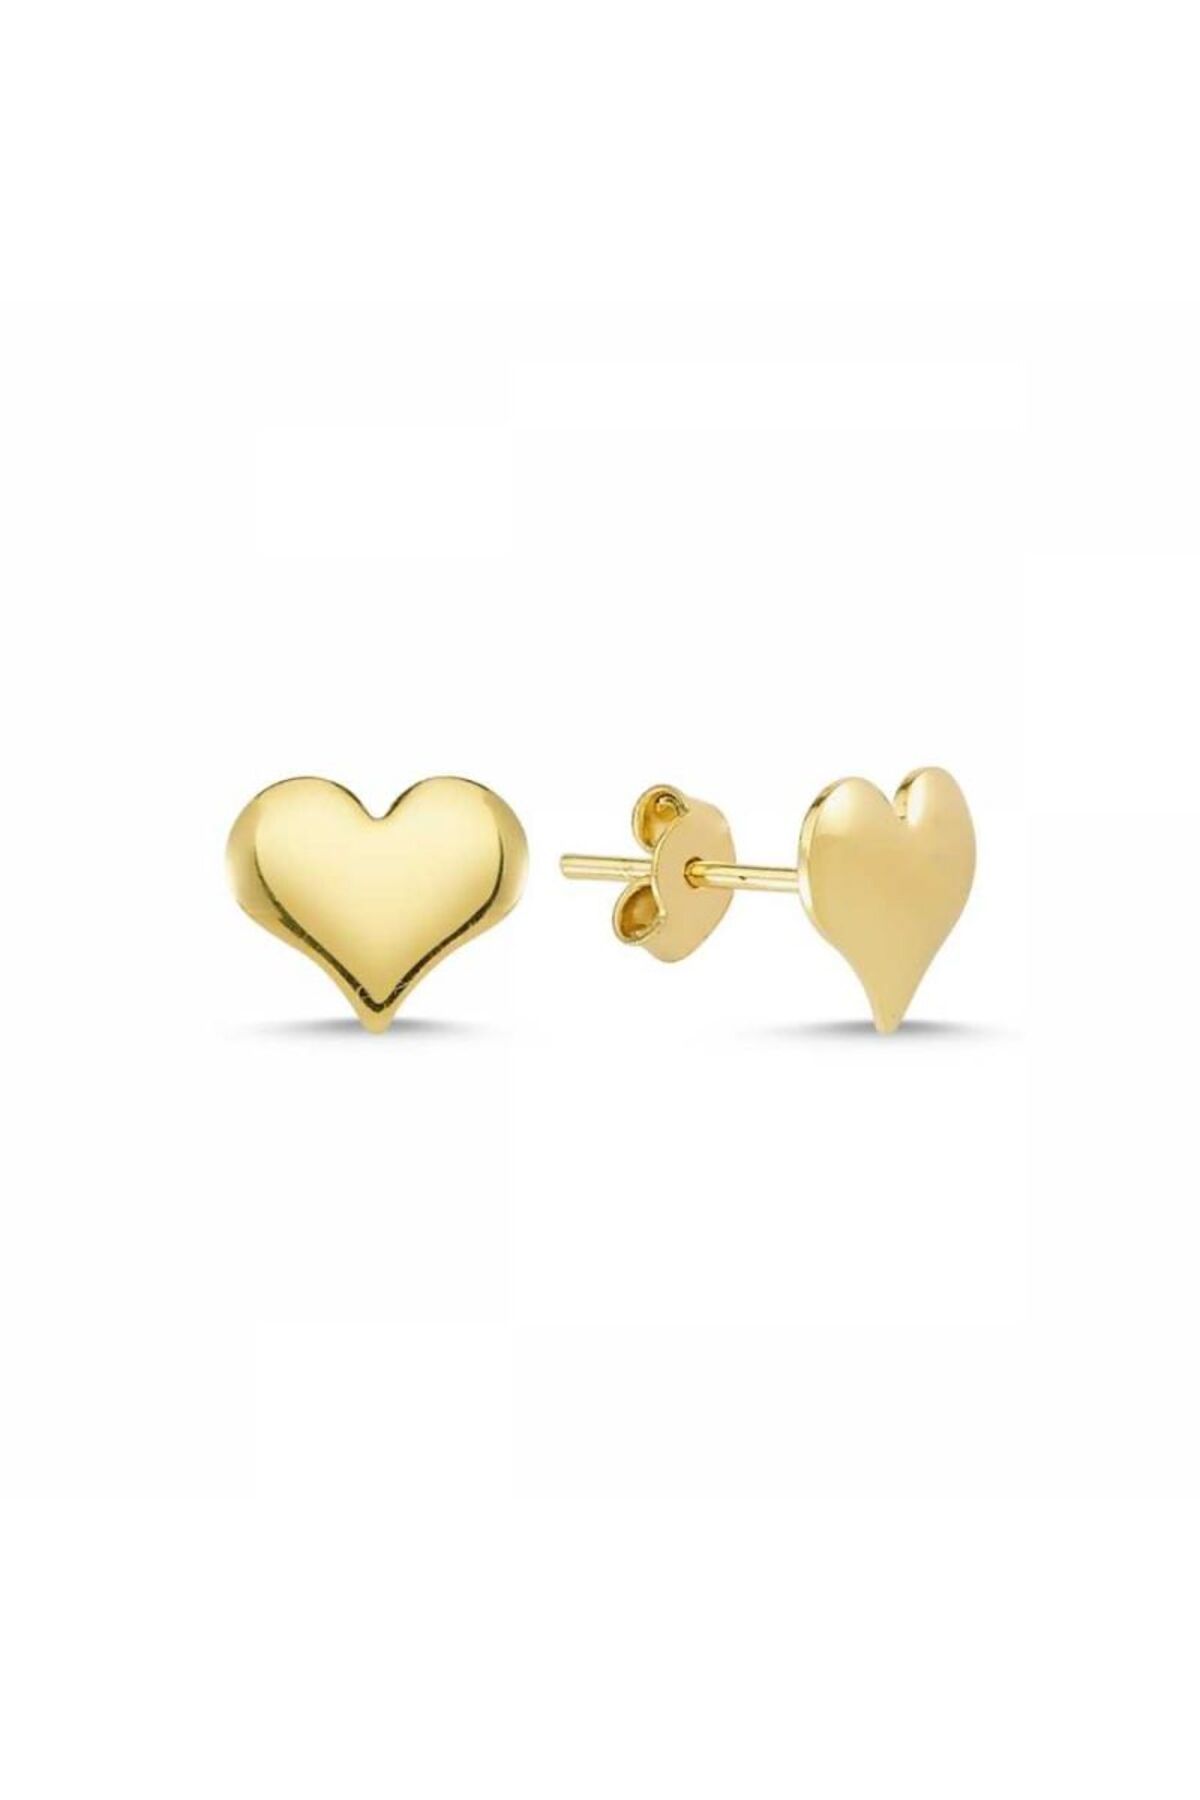 Sembol Gold Altın Kalp Küpe Iğne Model